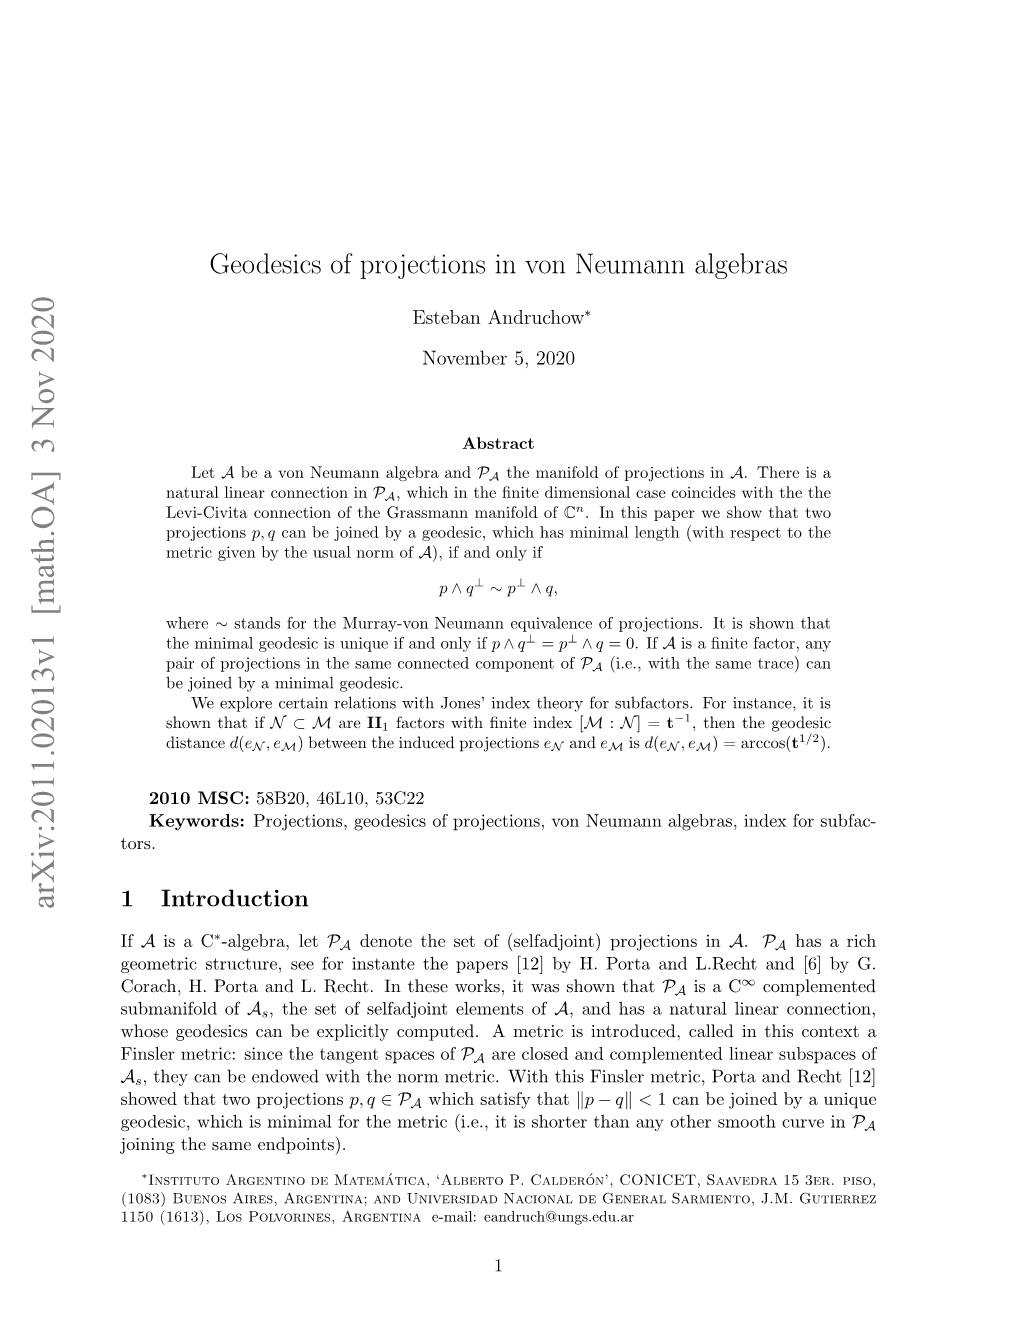 Geodesics of Projections in Von Neumann Algebras